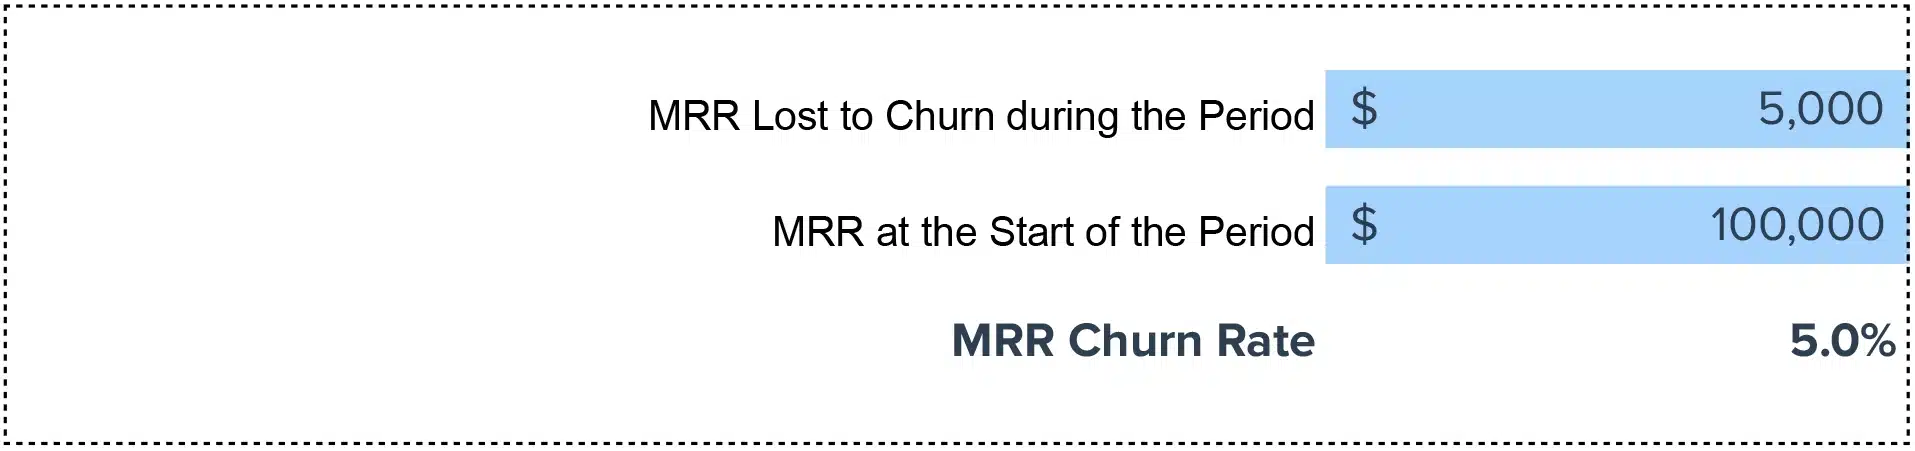 MRR Churn Rate